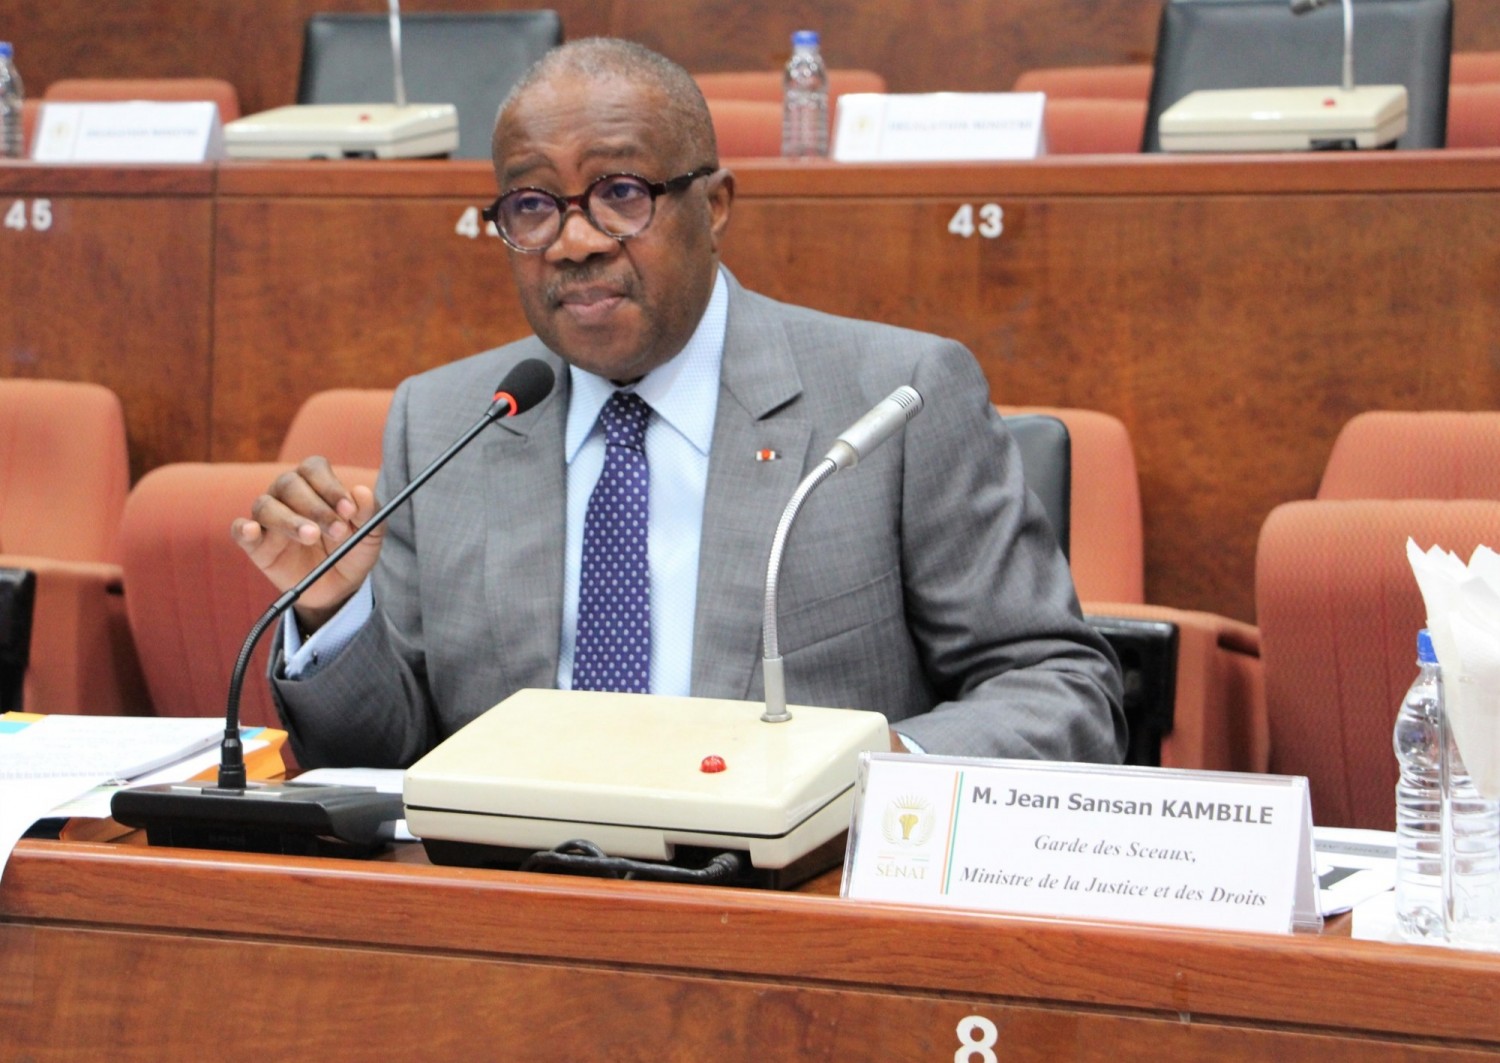 Côte d'Ivoire : Le Ministre de la Justice annonce une opération spéciale de délivrance de pièces administratives , le certificat de nationalité à 1000 FCFA